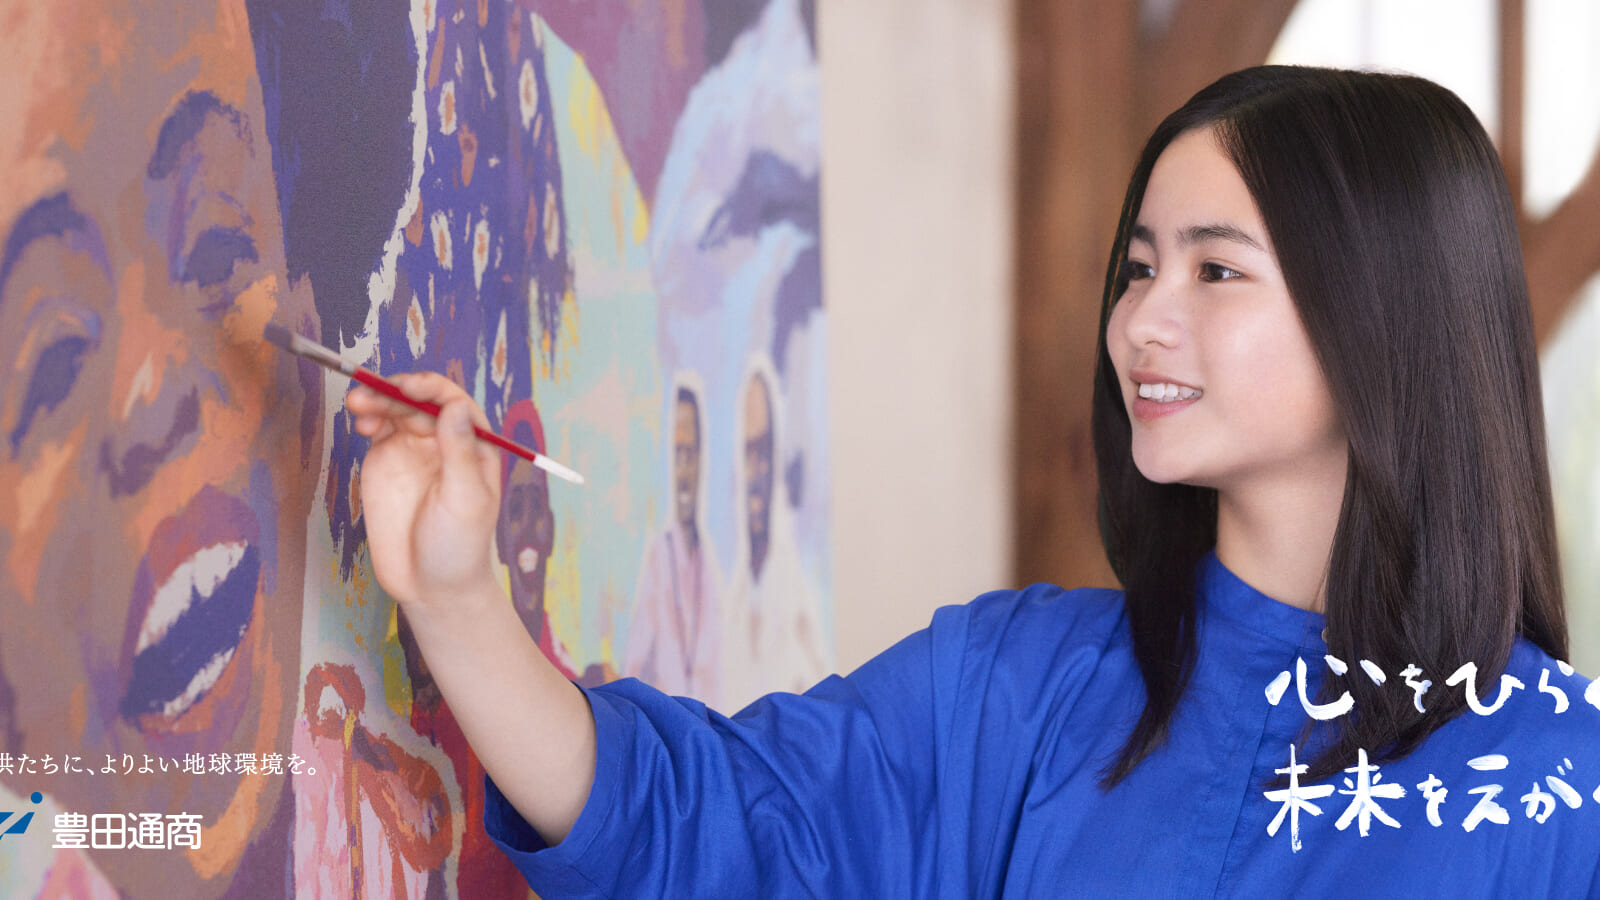 豊田通商の多様な事業をキャンバスに描き出す、 大月美里果さん主演の新CM「心をひらく。未来をえがく。」を公開